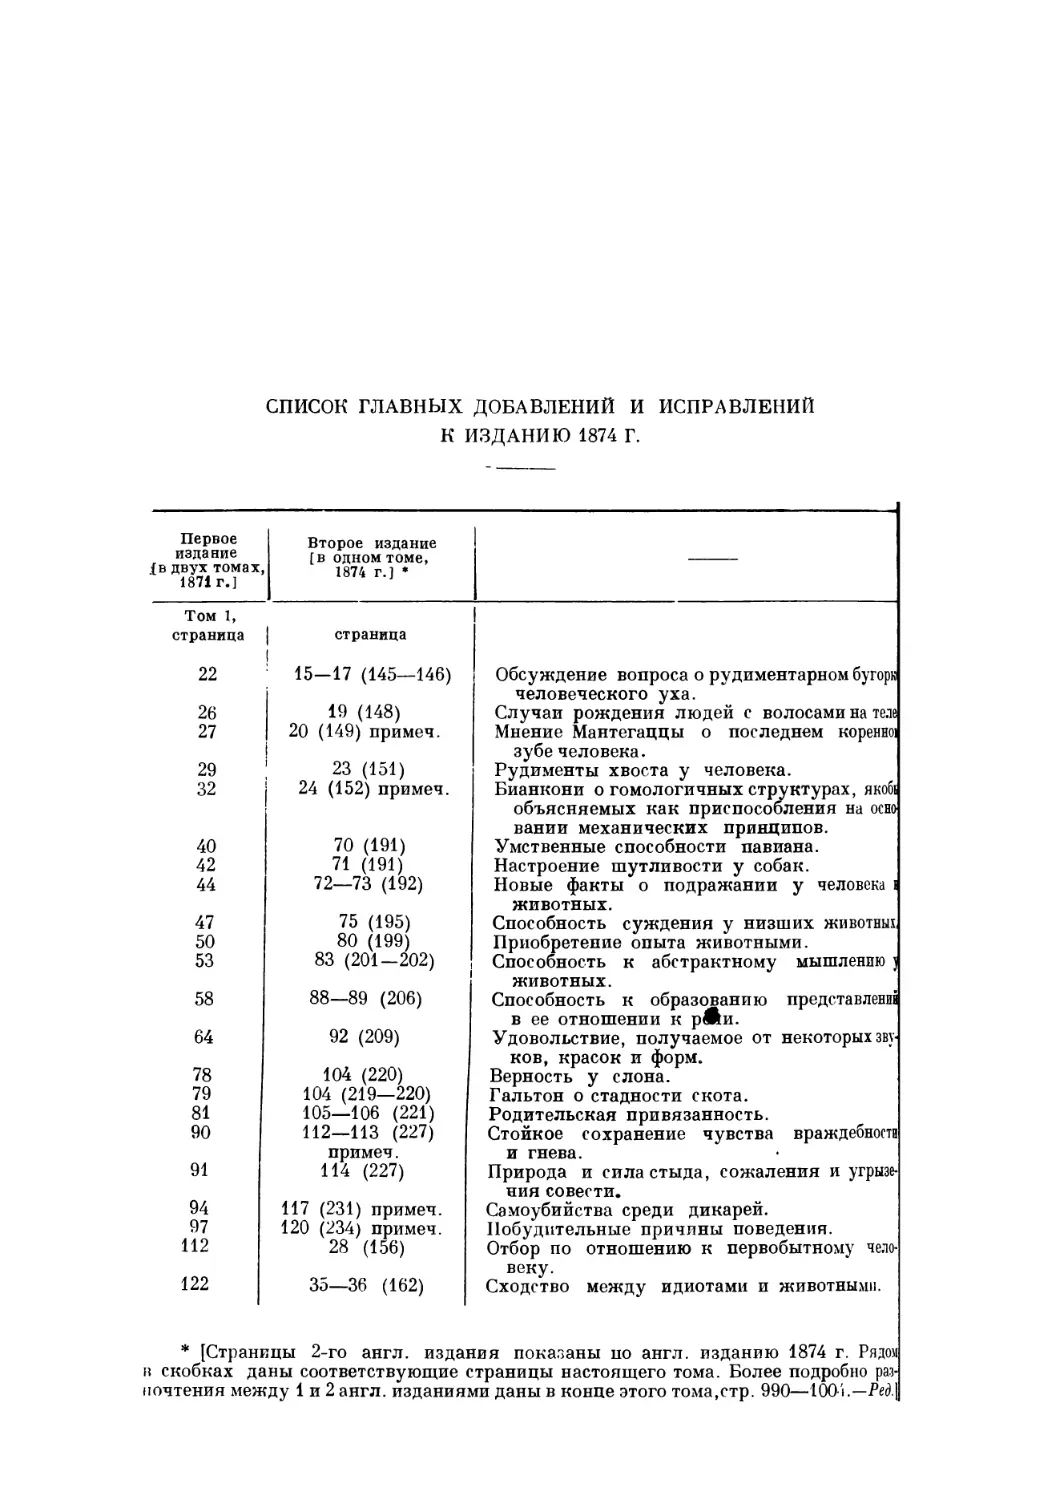 Список главных добавлений и исправлений к изданию 1874 г.